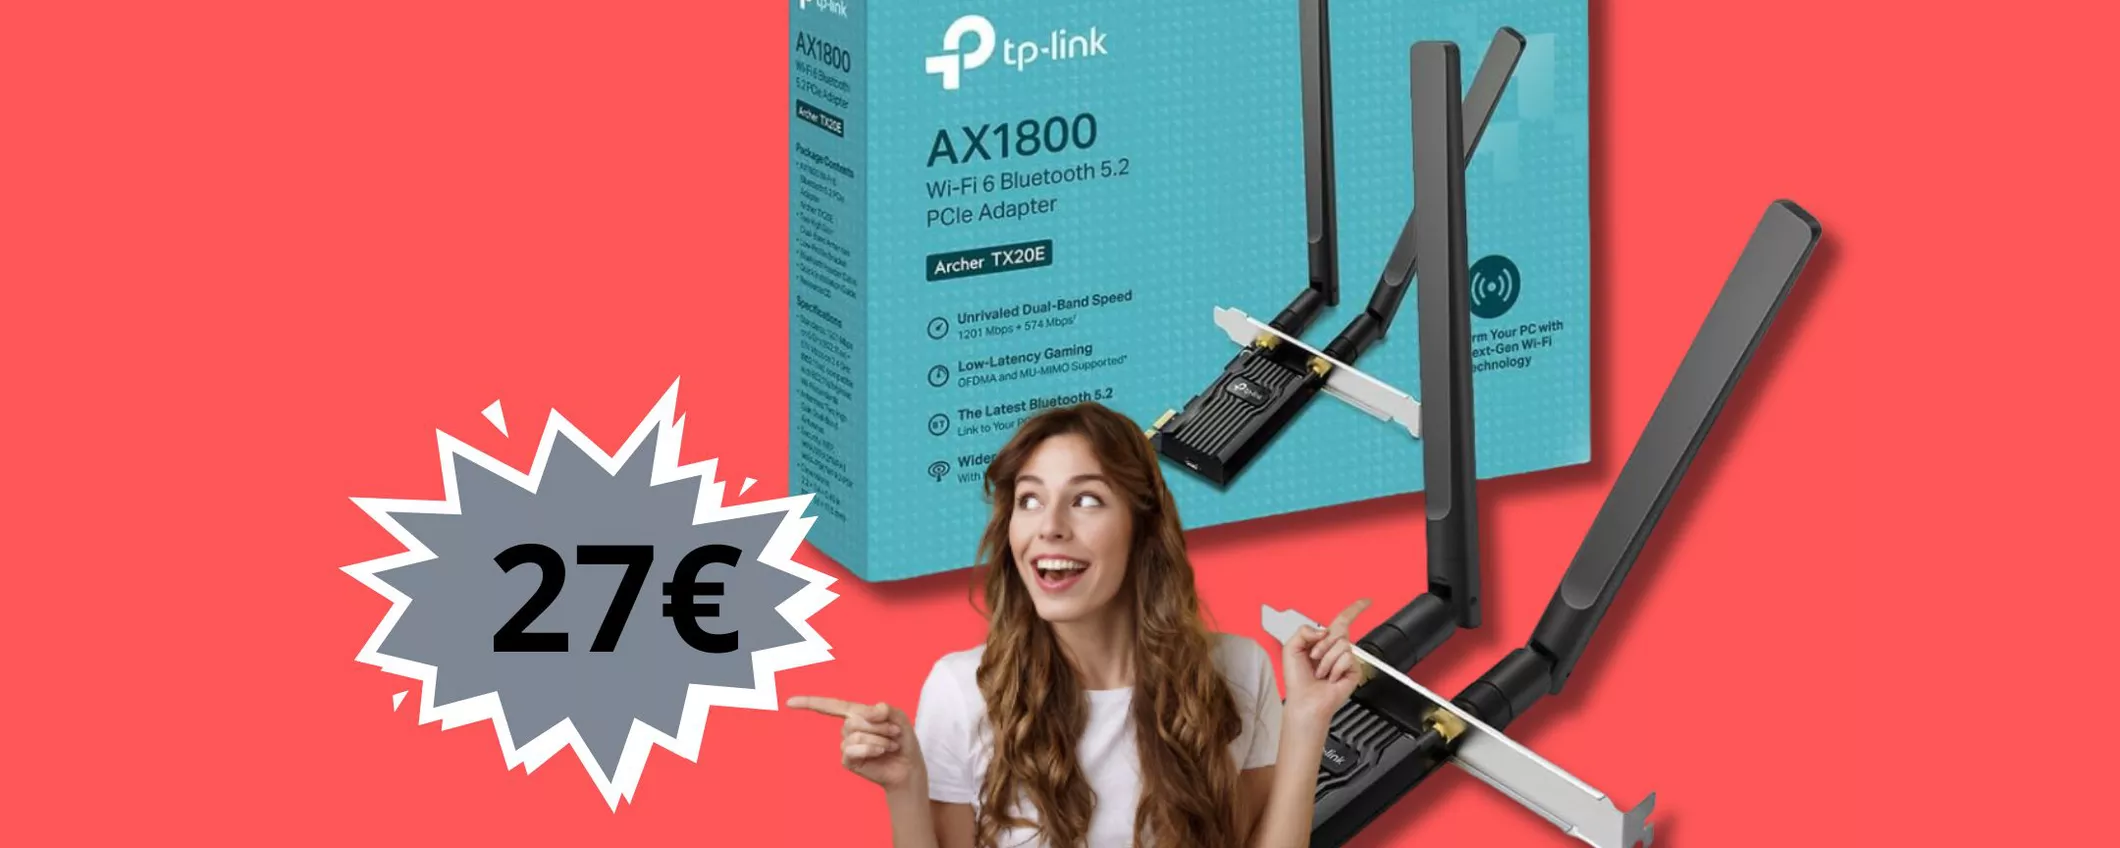 Con questo adattatore TP-Link avrai in casa il WiFi 6! Prendilo ADESSO a soli 27 euro!